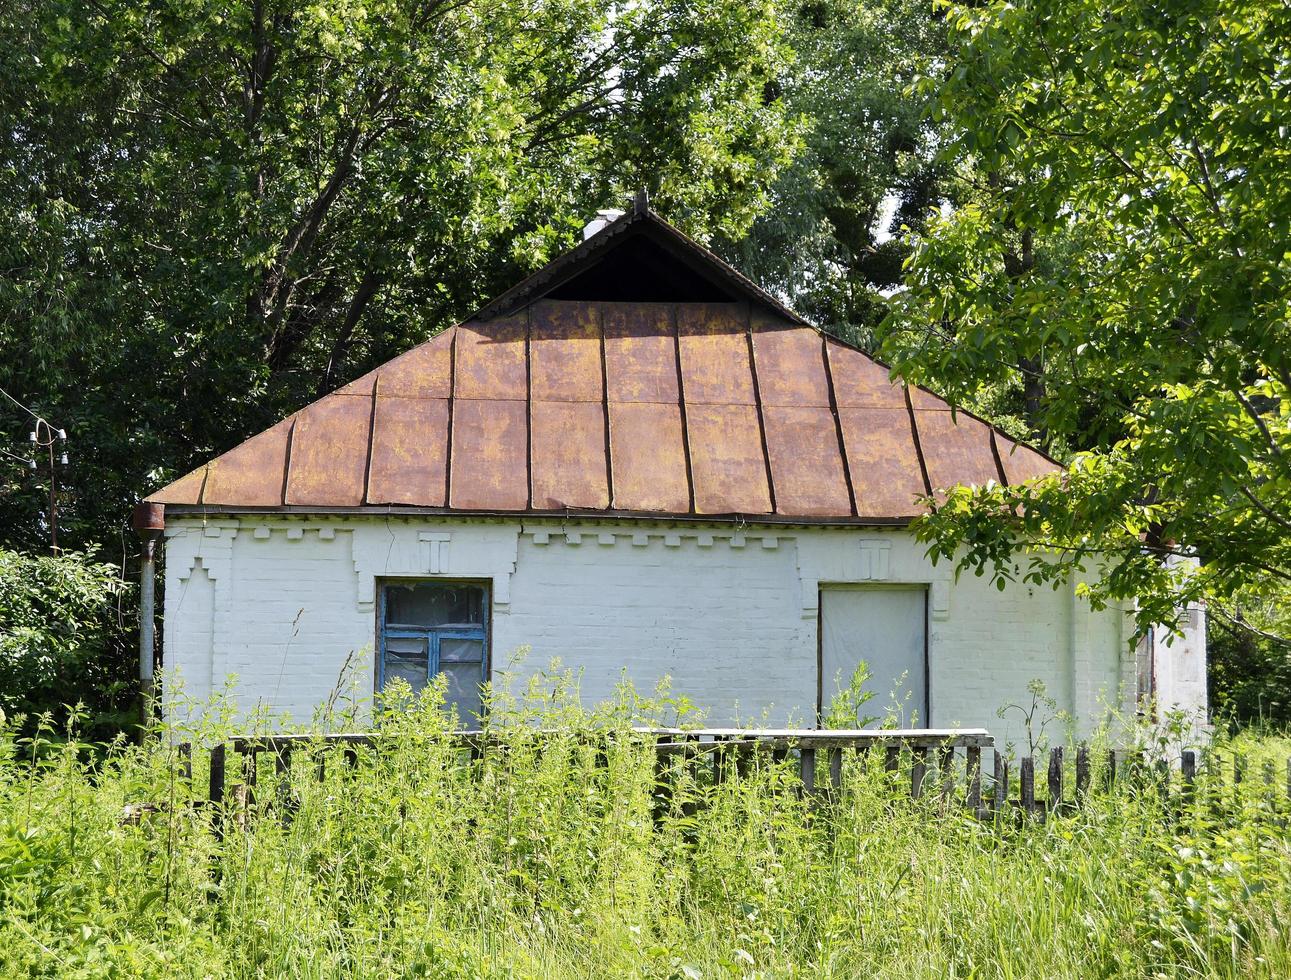 bellissimo vecchio edificio abbandonato fattoria in campagna foto